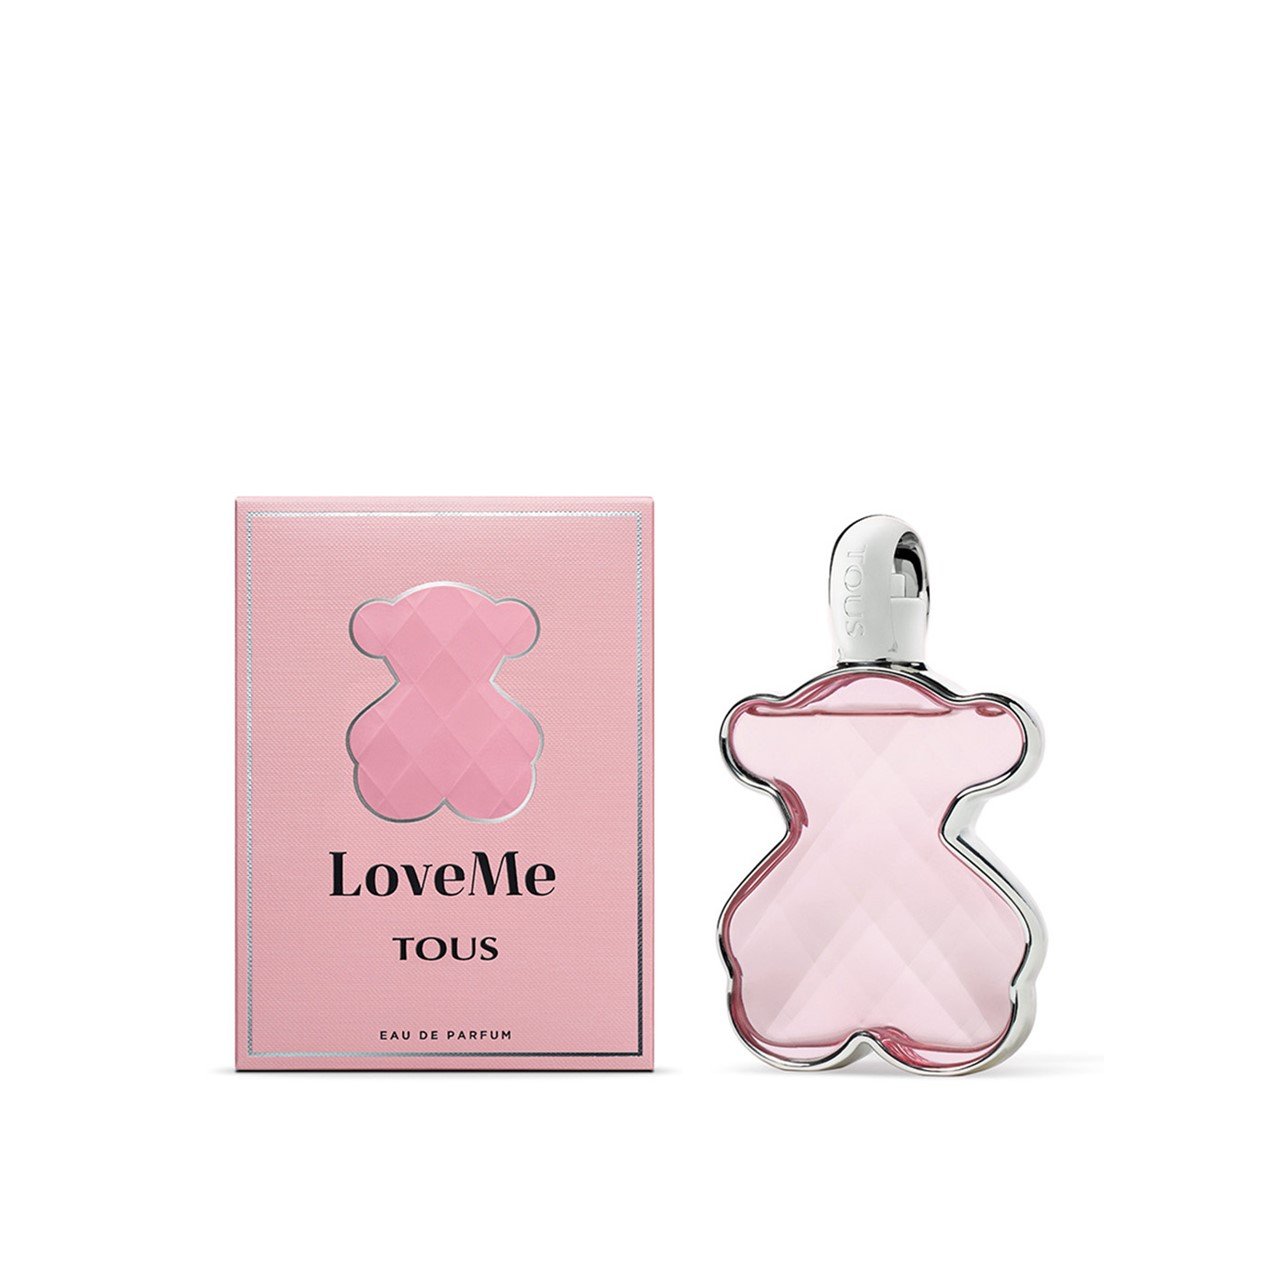 Tous LoveMe Eau de Parfum 30ml (1.0fl oz)